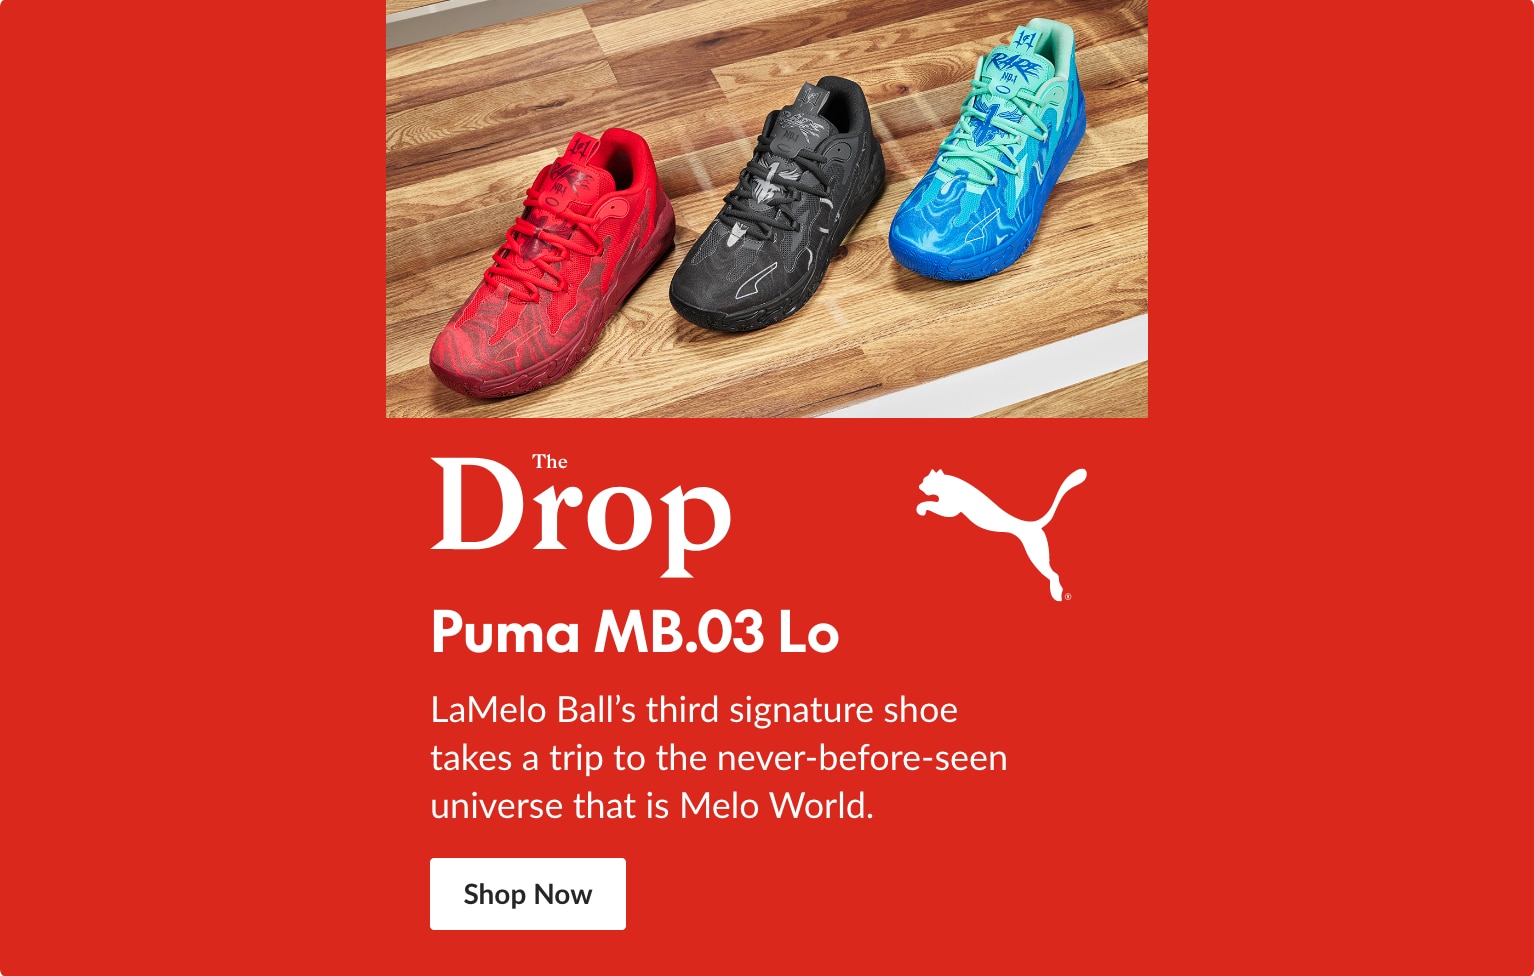 The Drop: PUMA MB.03 Lo